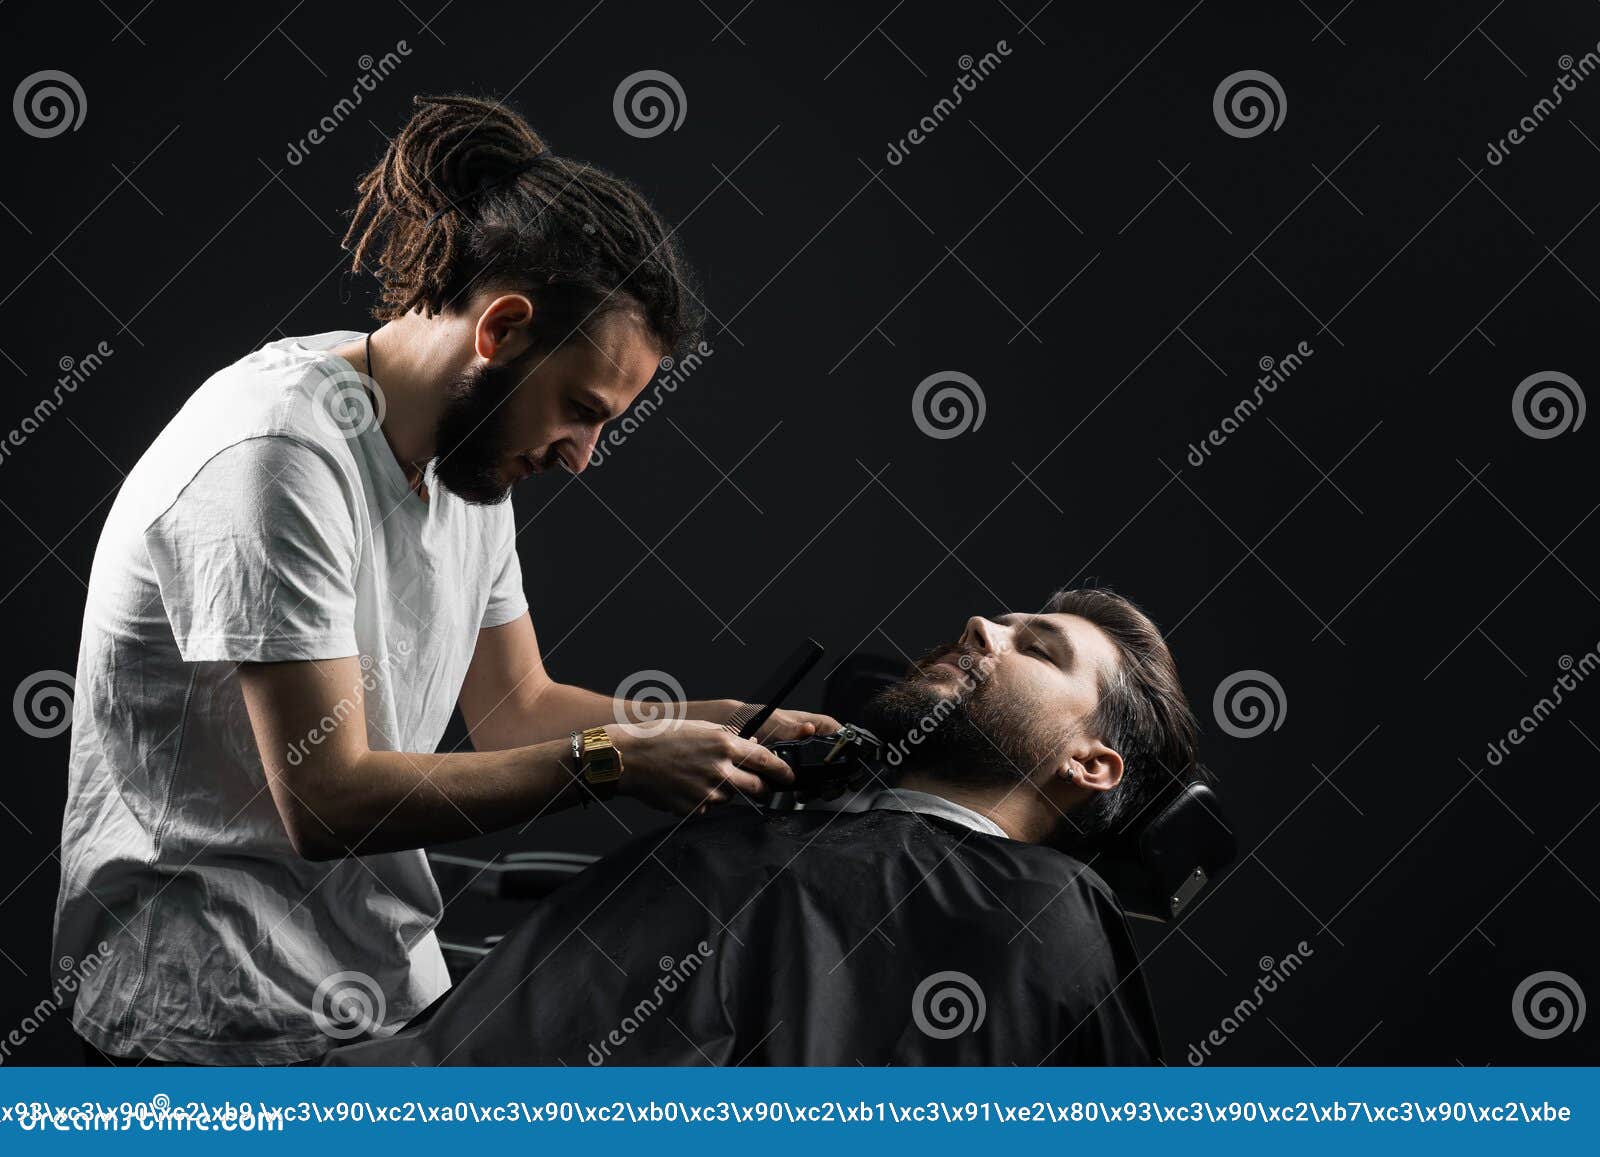 年轻理发师在剃须男子之前加热剃须刀 库存图片. 图片 包括有 白种人, 户内, 修饰, 美发师, 客户机 - 177019269